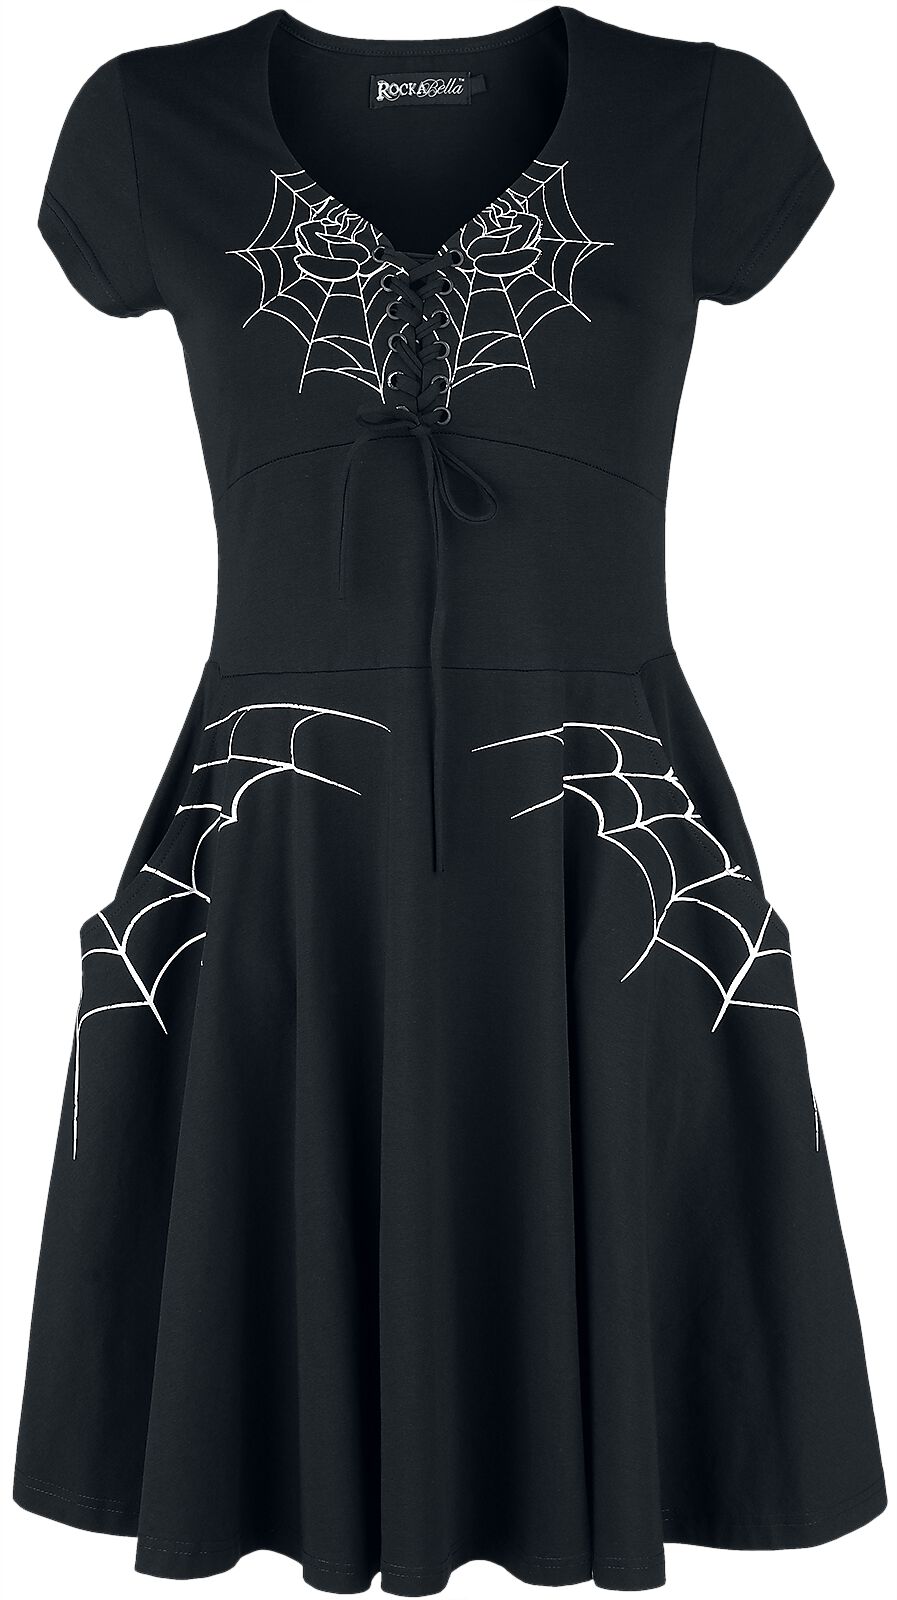 Rockabella - Gothic Kurzes Kleid - Black Widow Dress - S bis 4XL - für Damen - Größe 3XL - schwarz/weiß